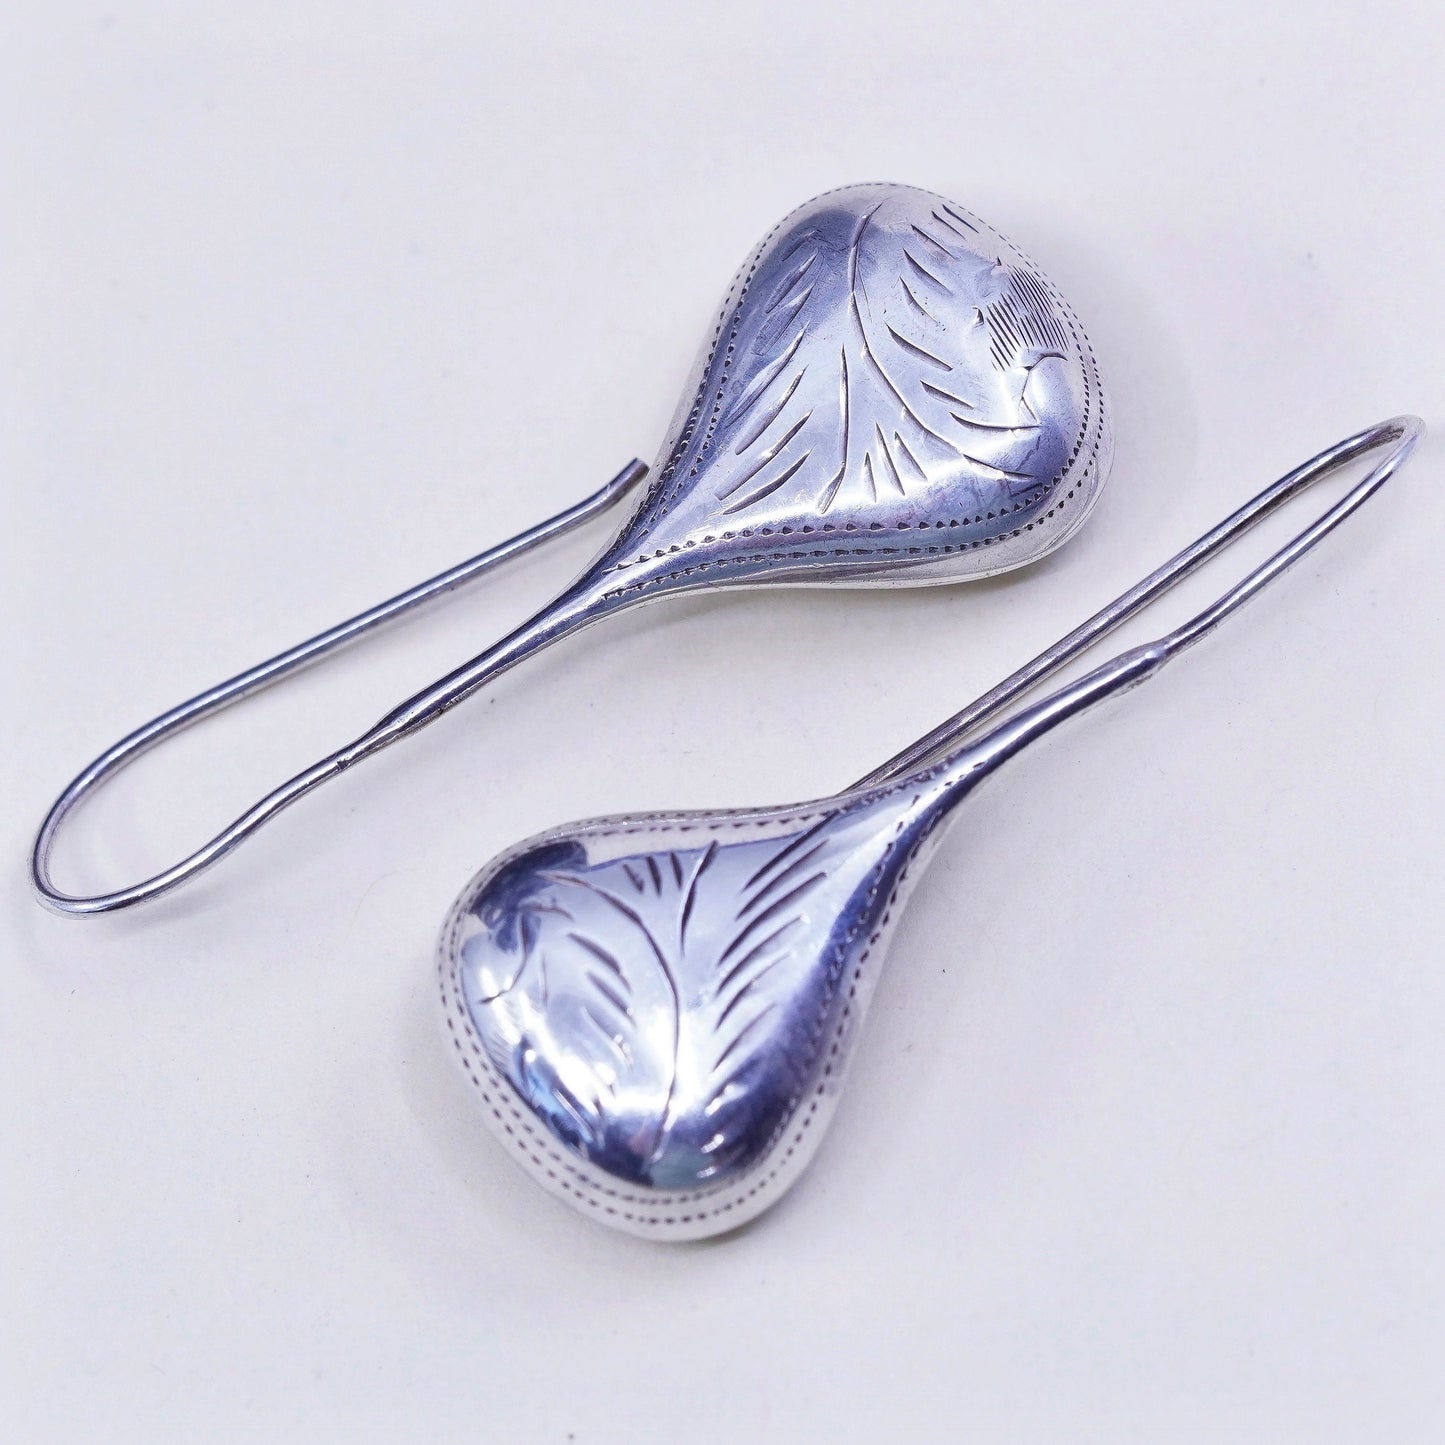 Vintage Sterling silver handmade earrings, textured puffy 925 teardrop dangles